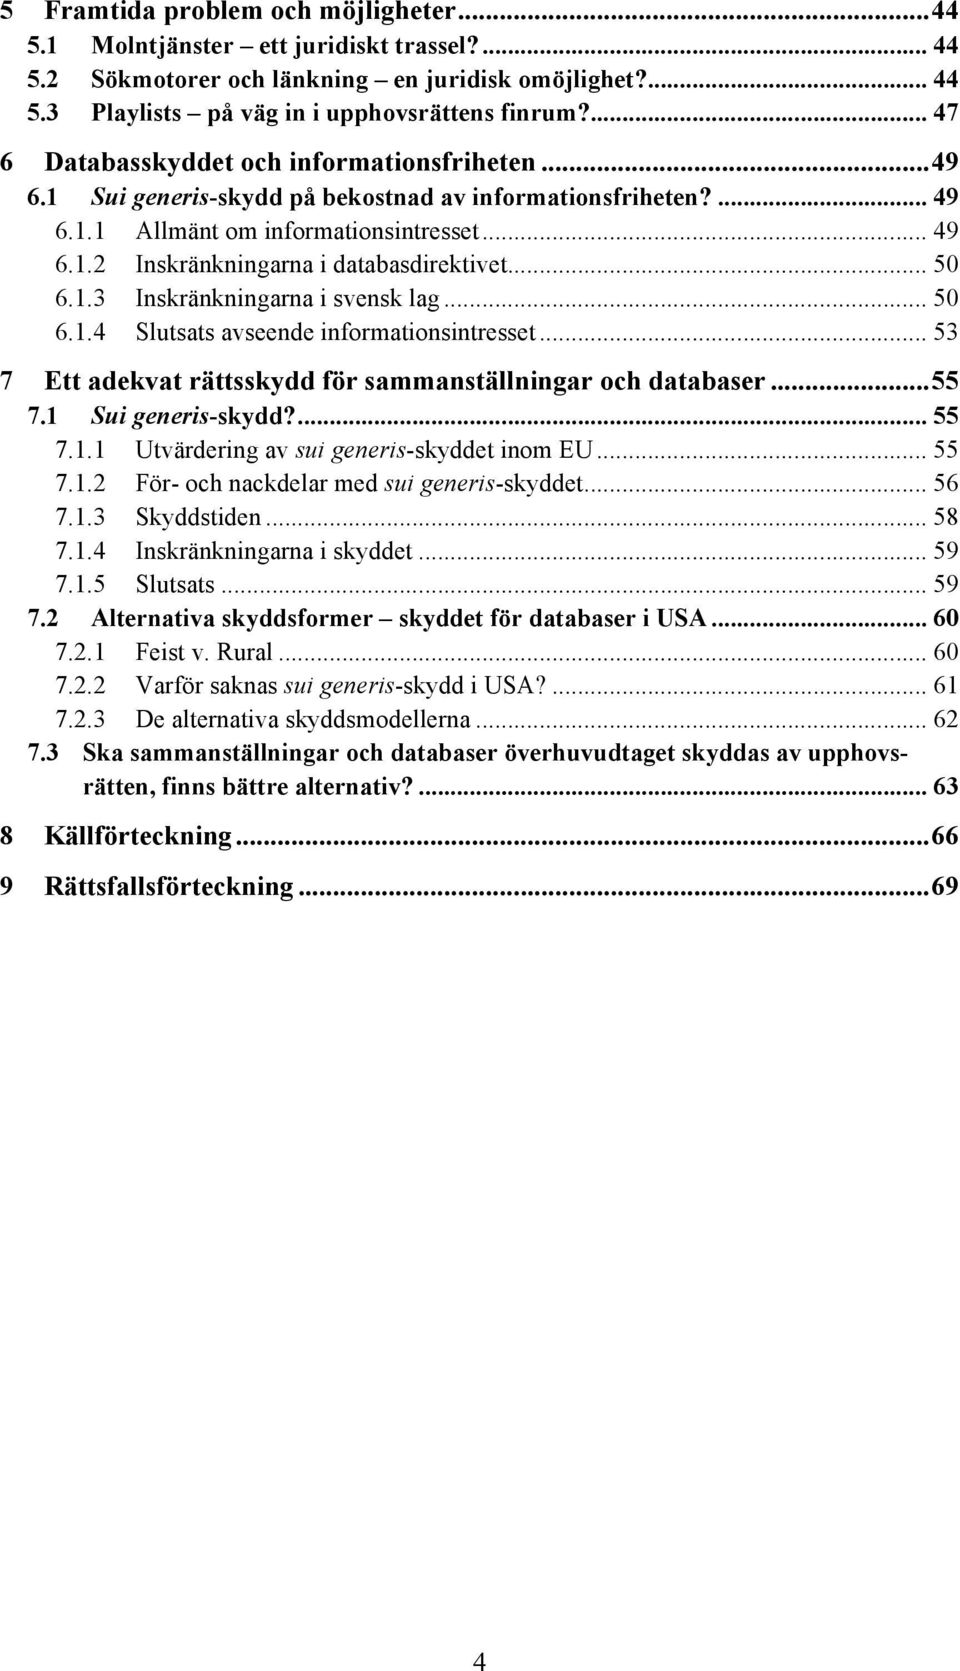 .. 50 6.1.3 Inskränkningarna i svensk lag... 50 6.1.4 Slutsats avseende informationsintresset... 53 7 Ett adekvat rättsskydd för sammanställningar och databaser... 55 7.1 Sui generis-skydd?... 55 7.1.1 Utvärdering av sui generis-skyddet inom EU.